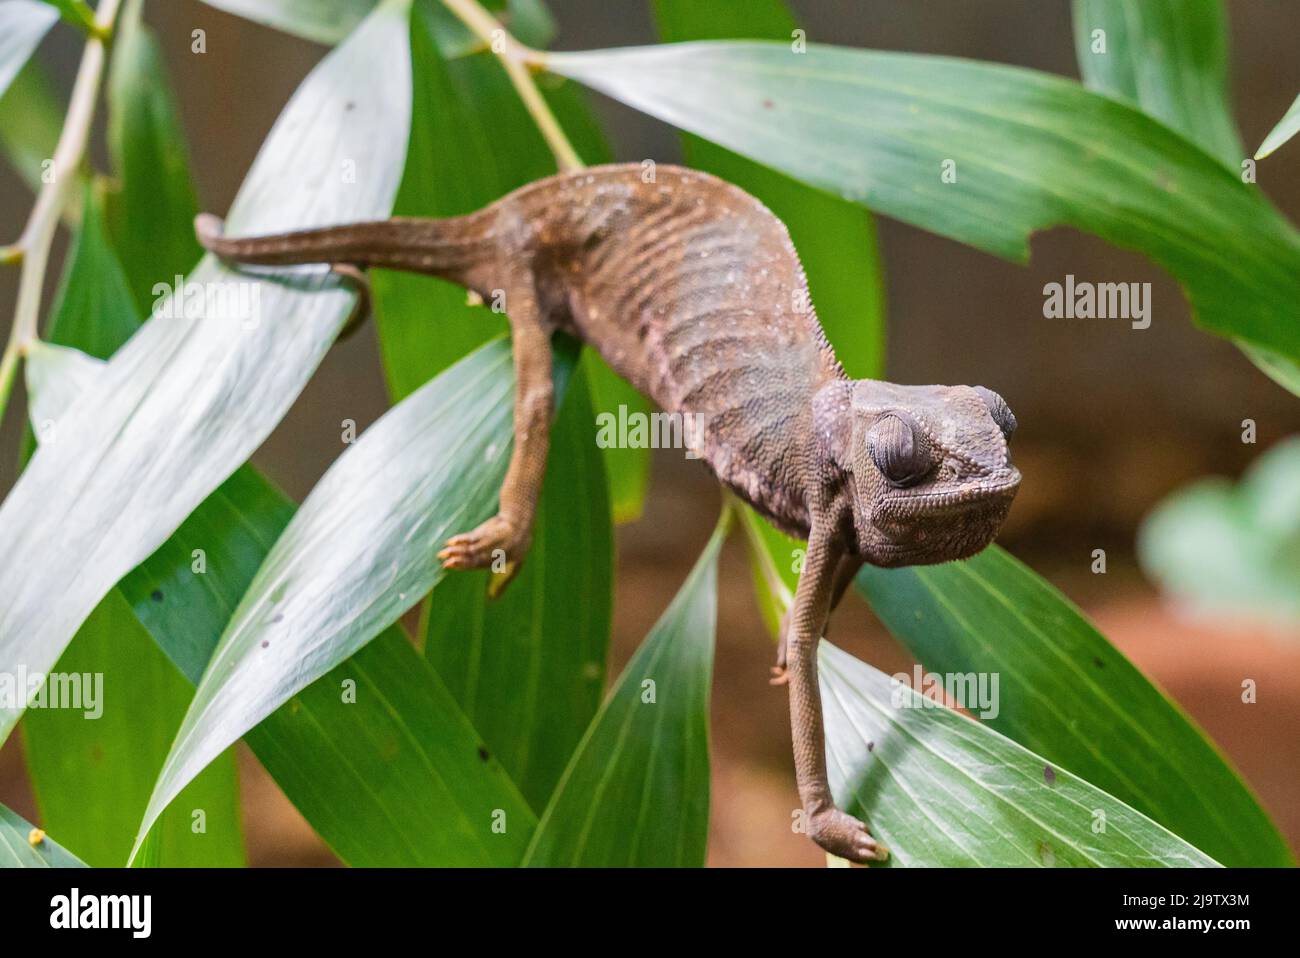 Chameleon sitting on the leaves. Chameleo on Zanzibar Stock Photo